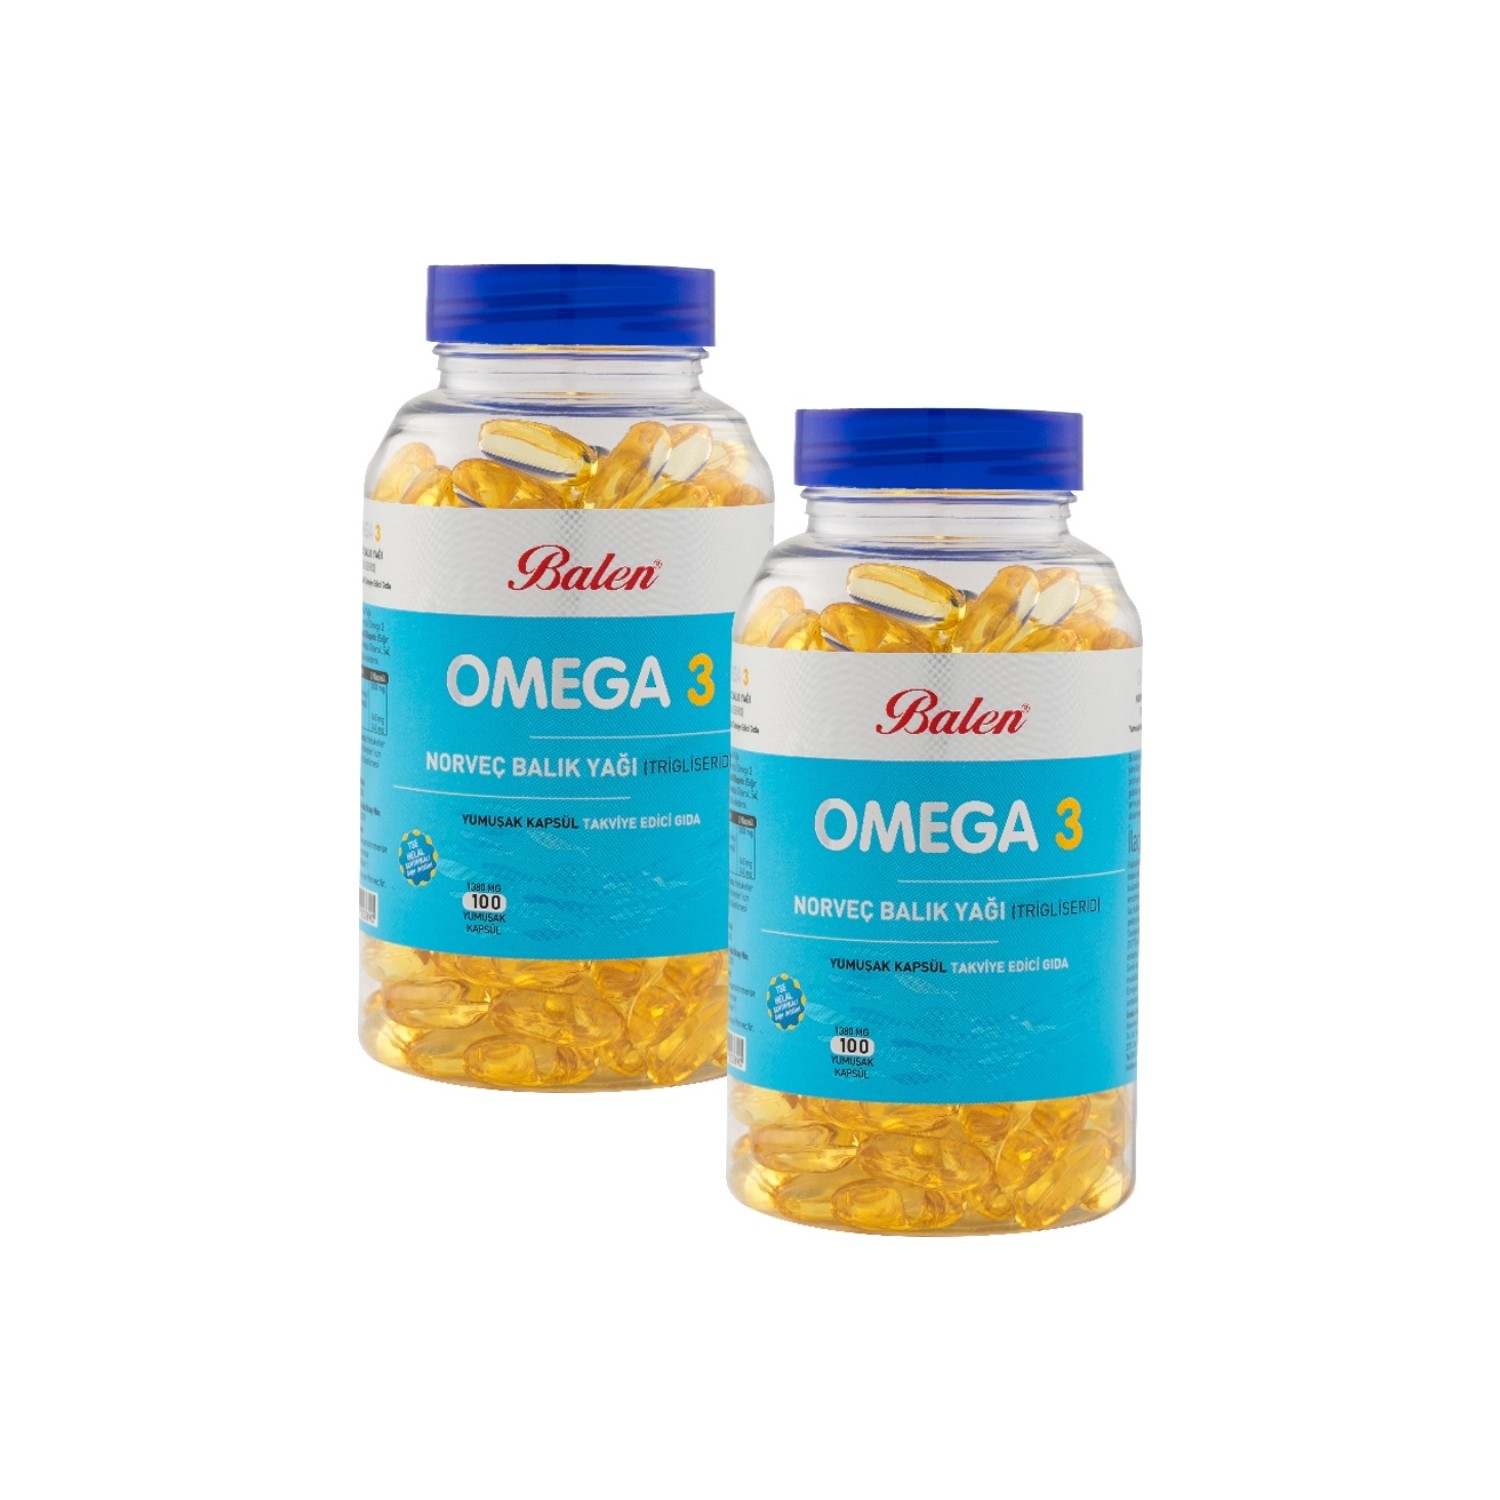 Норвежский рыбий жир Balen Omega-3 (триглицерид) 1380 мг, 2 упаковки по 100 капсул норвежский рыбий жир balen omega 3 триглицерид 1380 мг 200 капсул